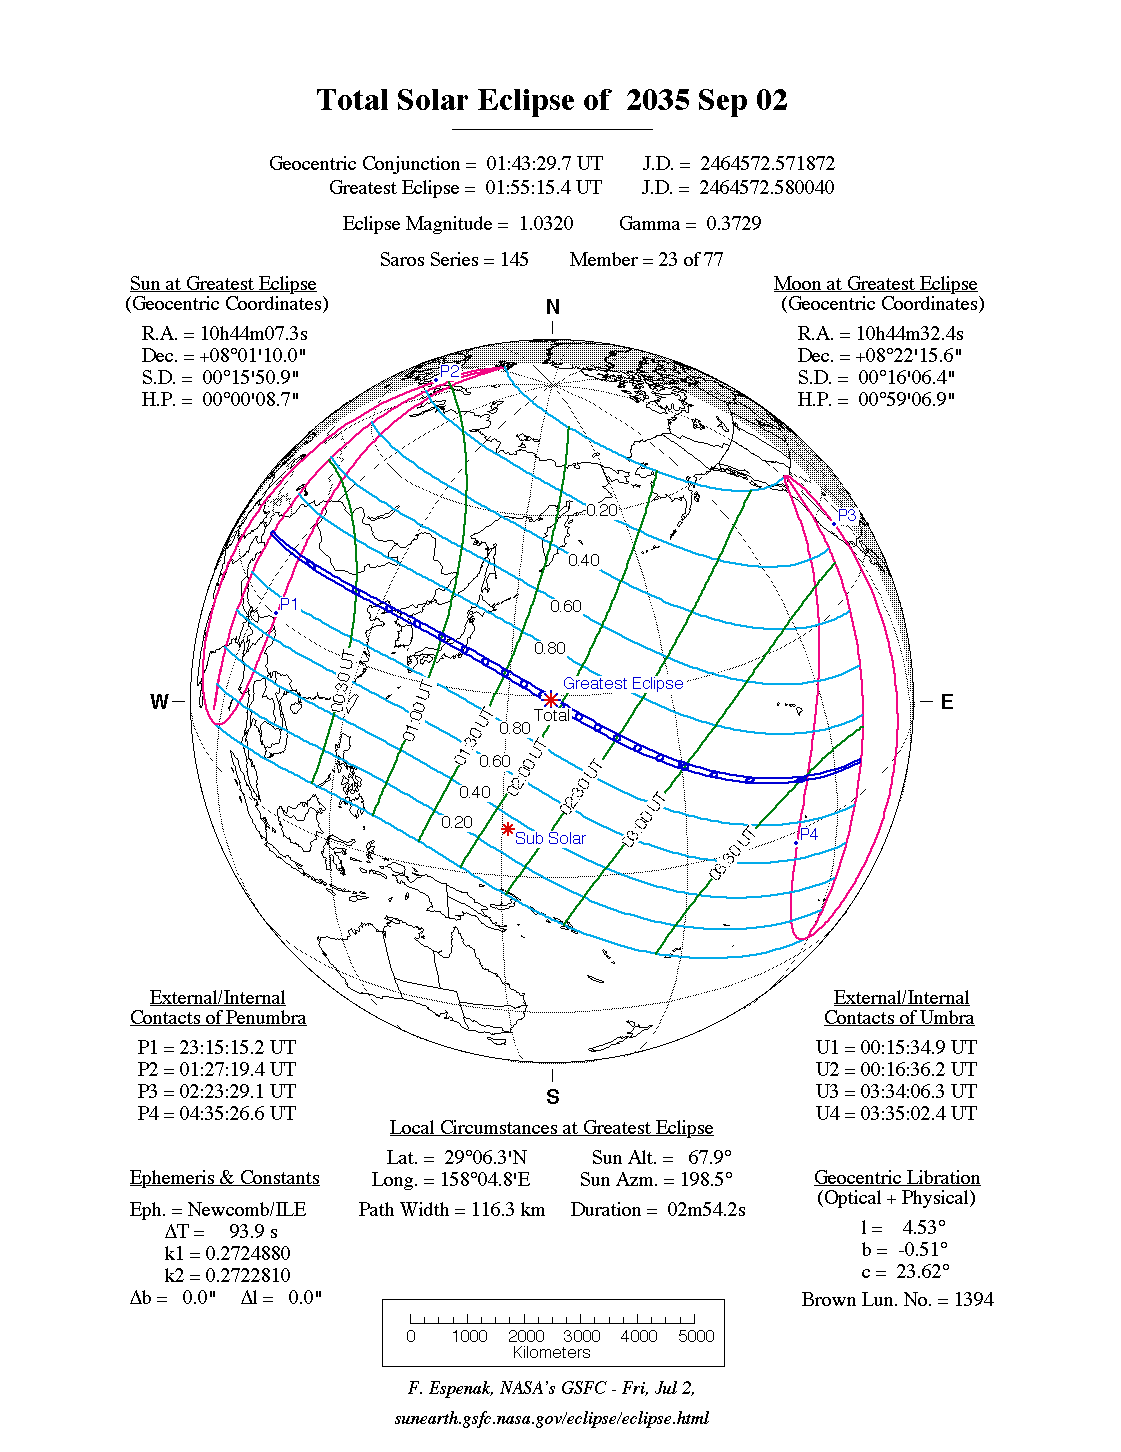 Verlauf der Totalen Sonnenfinsternis am 02.09.2035